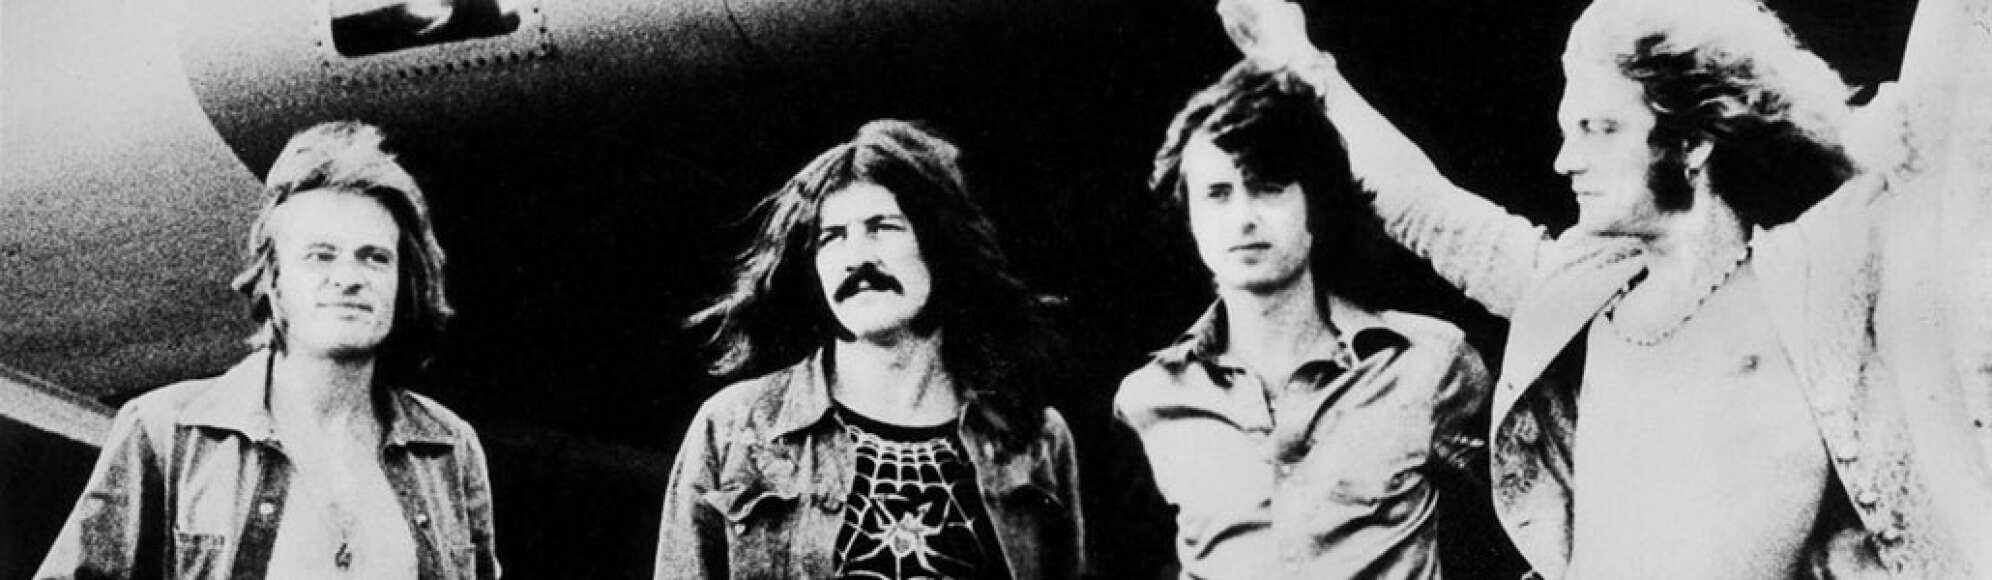 Led Zeppelin in schwarzweiss